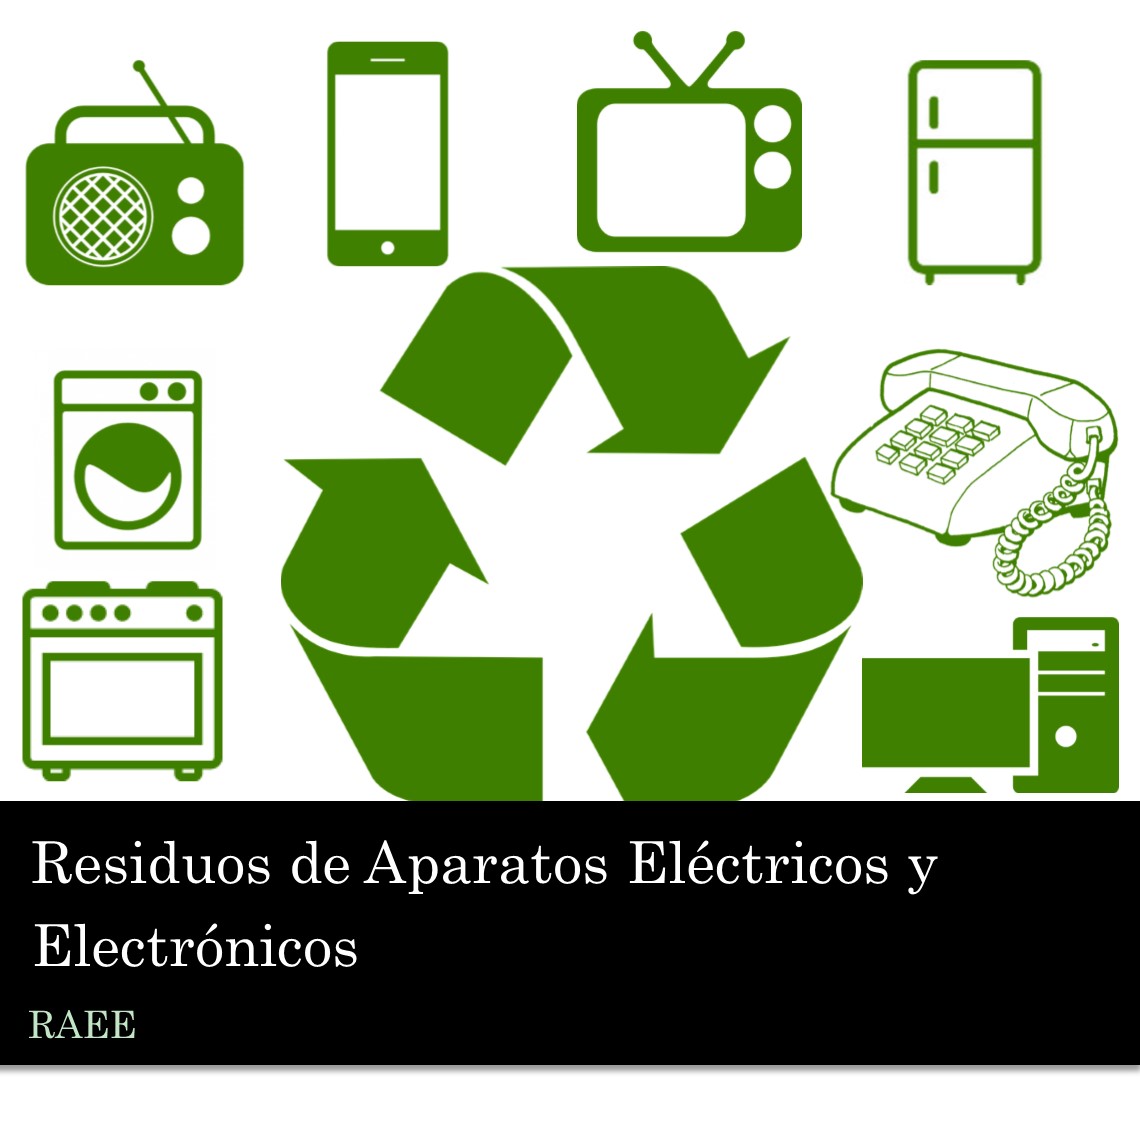 Residuos de Aparatos Eléctricos y Electrónicos